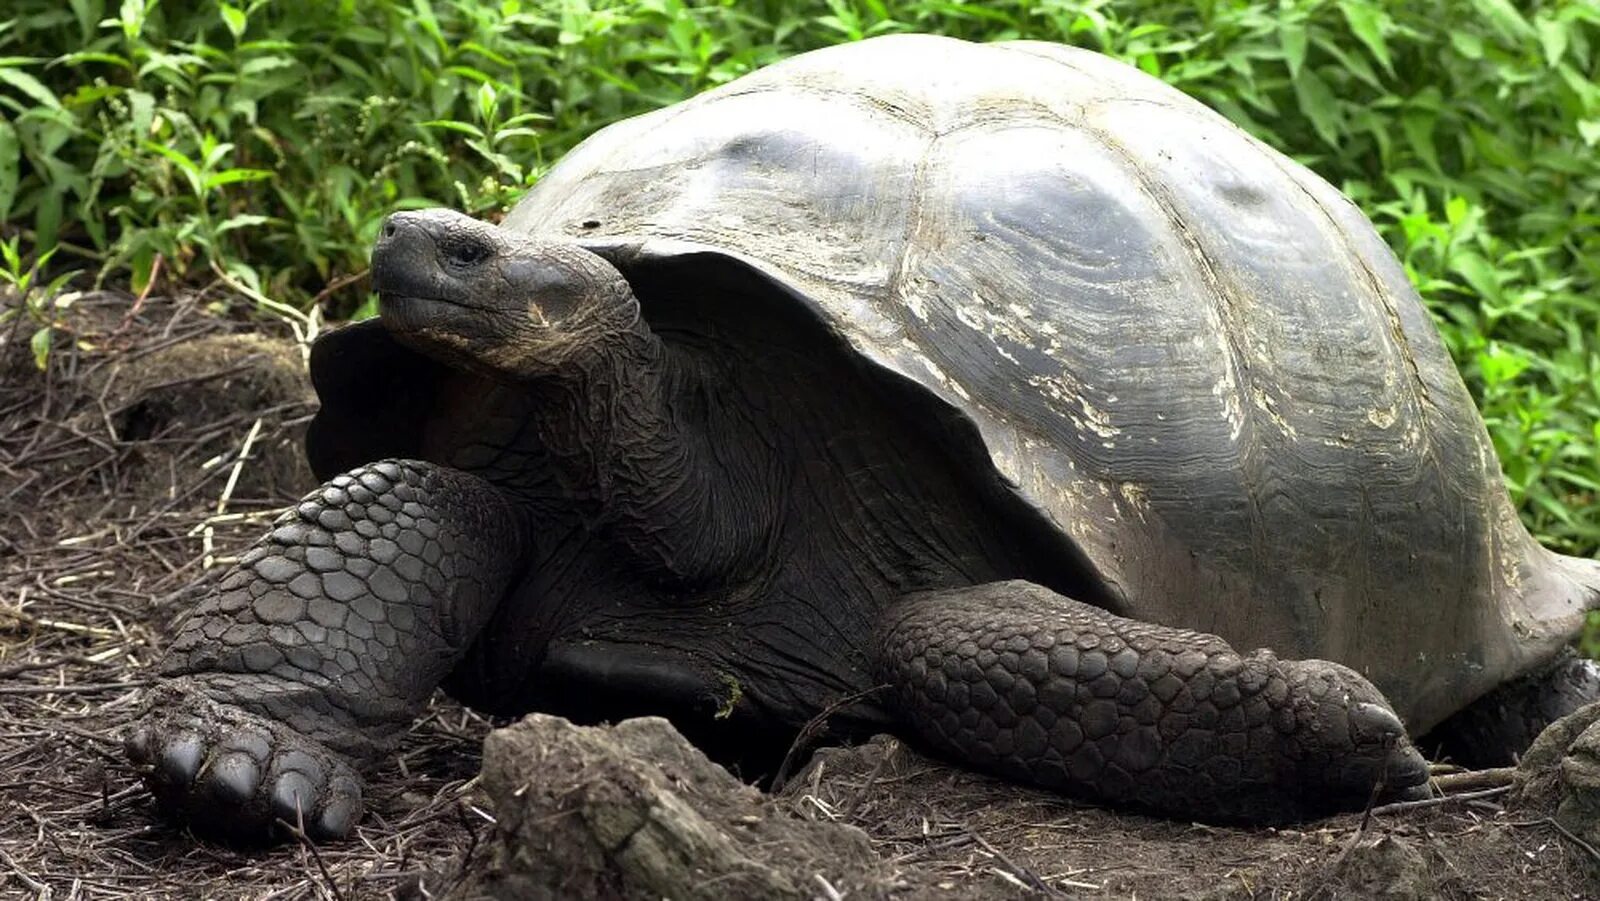 Галапагосская черепаха. Галапагосская слоновая черепаха. Галапагосские острова черепахи. Галапагосская гигантская черепаха вымерла. Черты приспособленности слоновых черепах